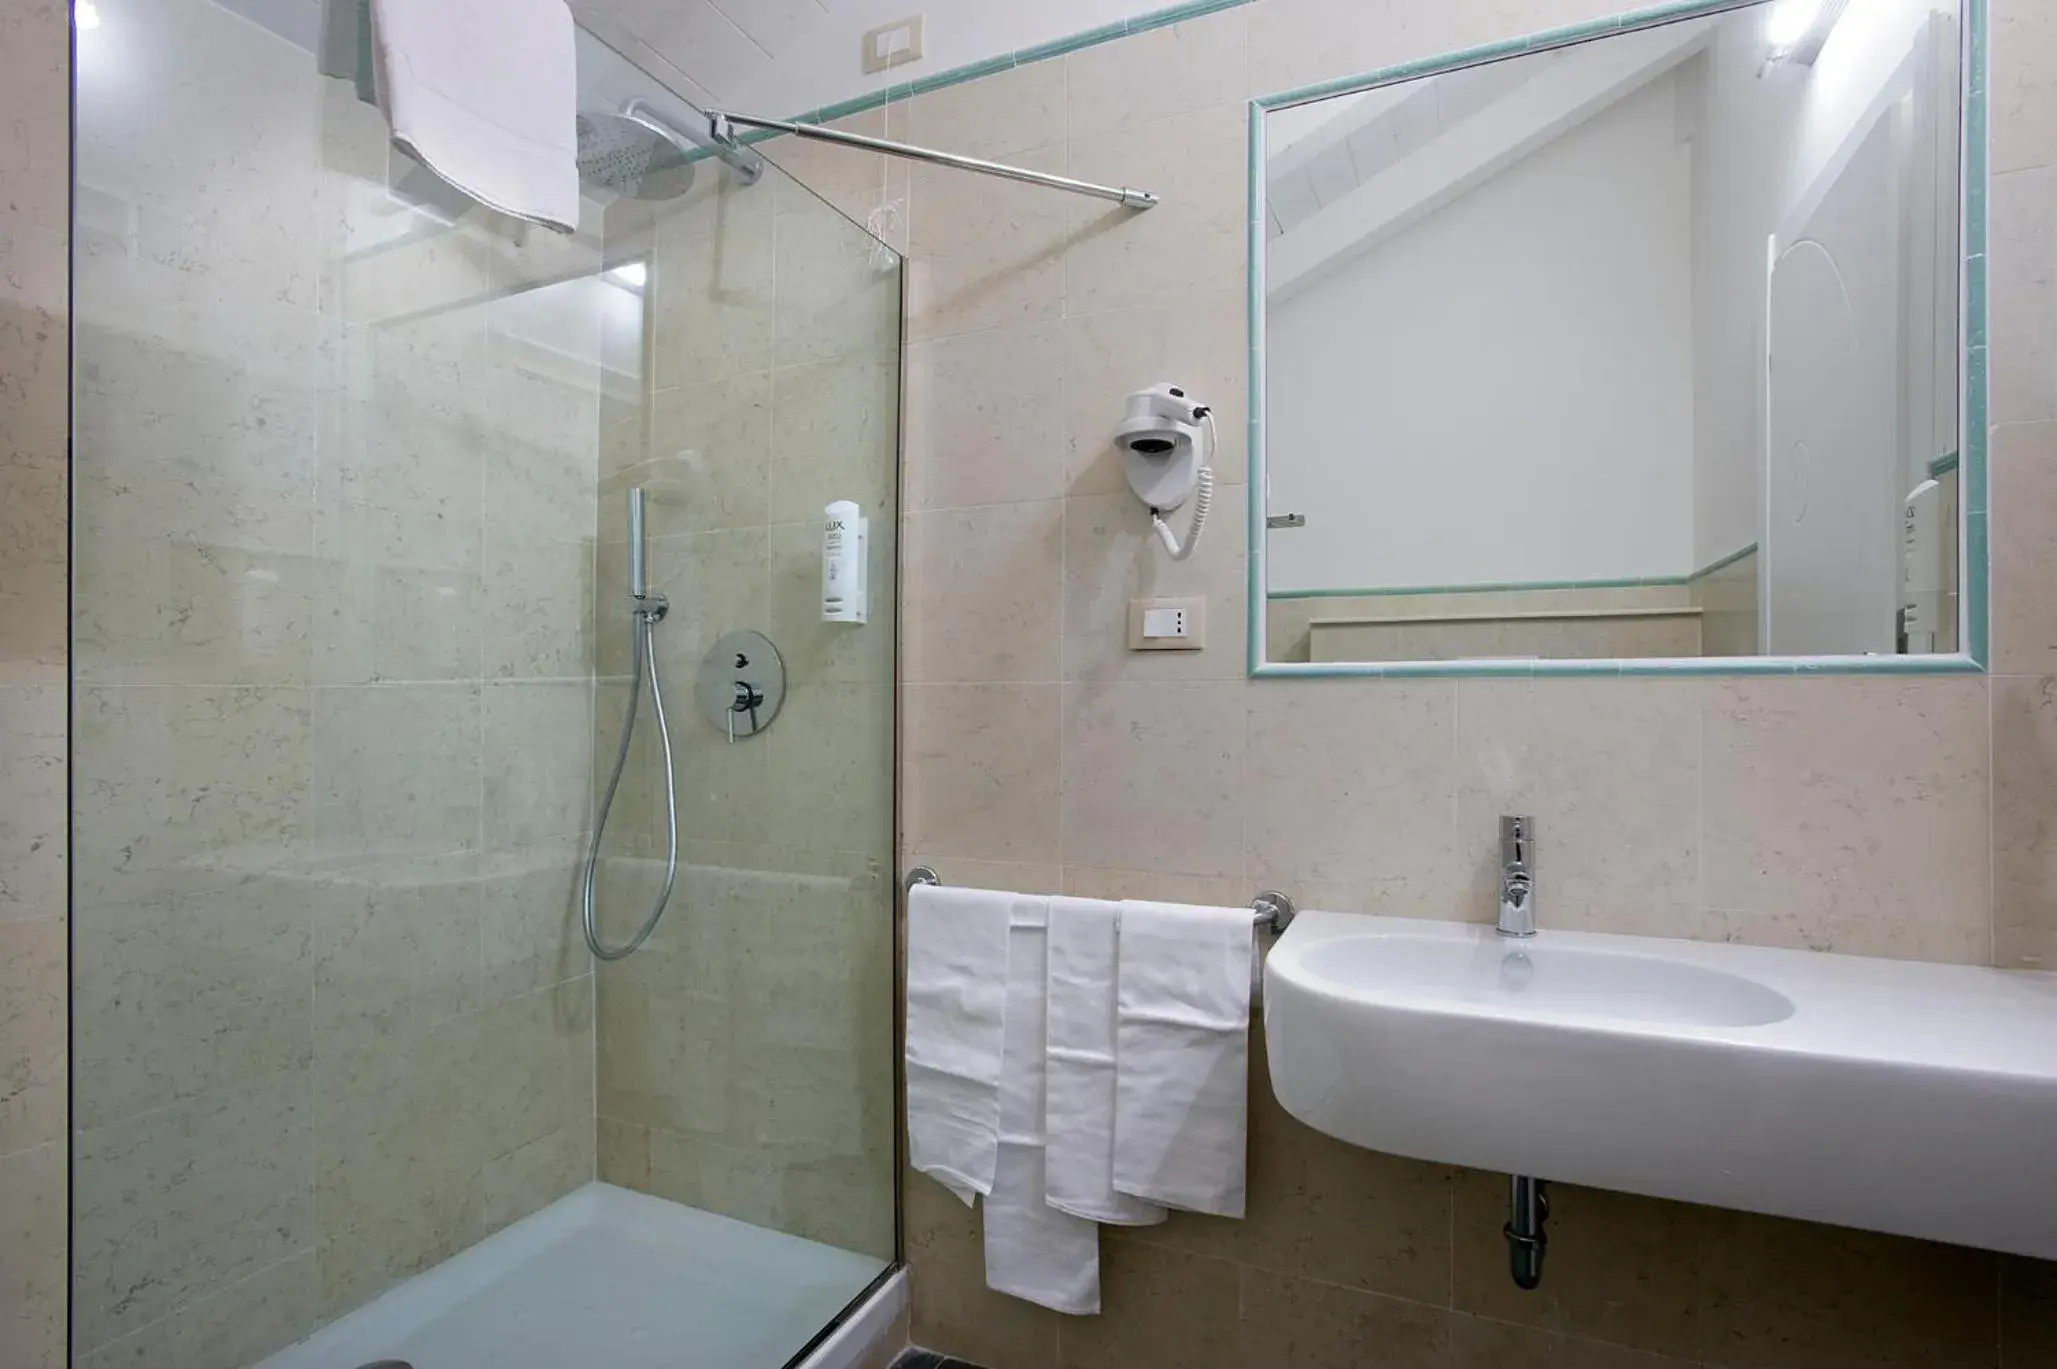 Bathroom in Dipendenza Hotel Bellavista